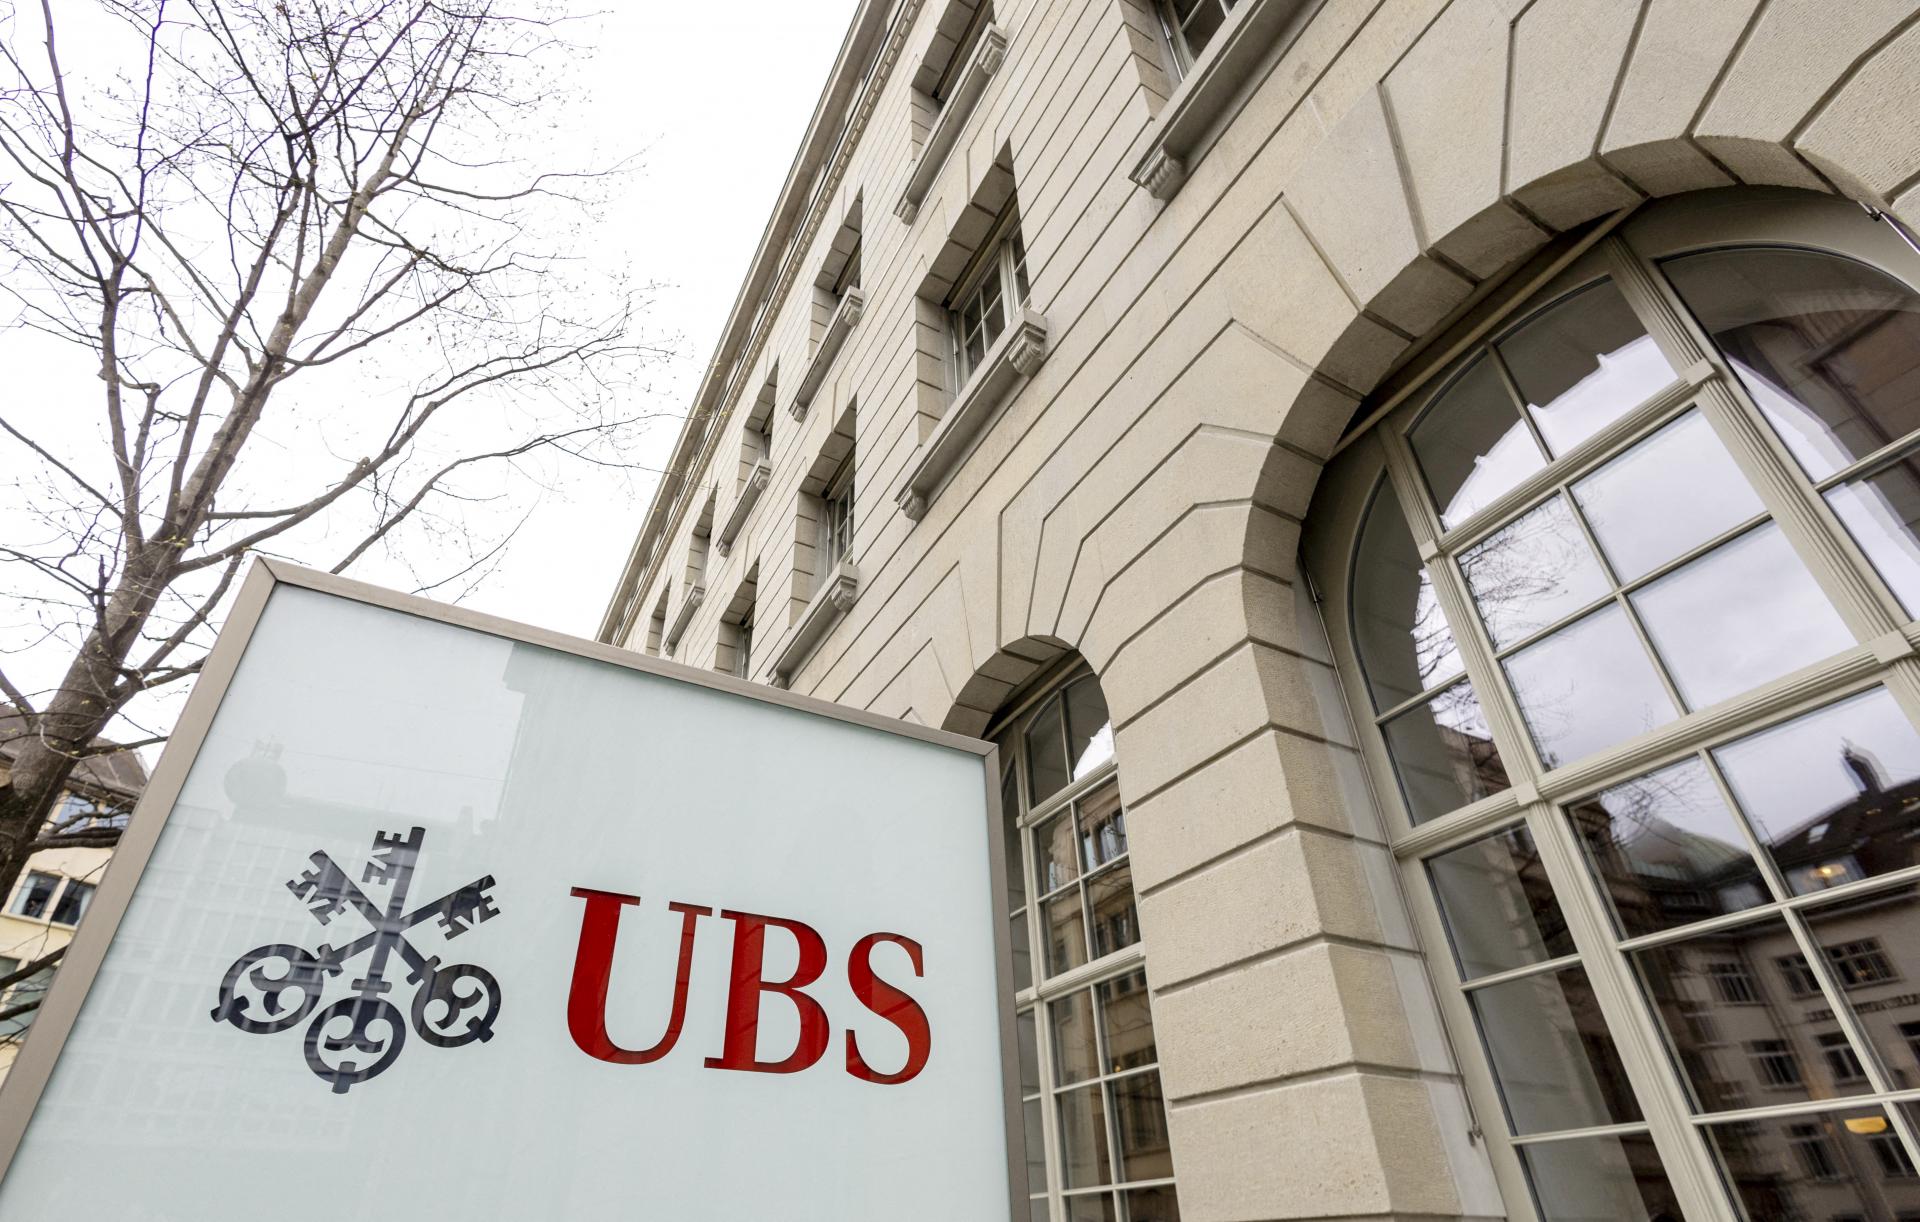 Politici navrhujú redukciu veľkobanky UBS, jej aktíva dosahujú dvojnásobok švajčiarskej ekonomiky